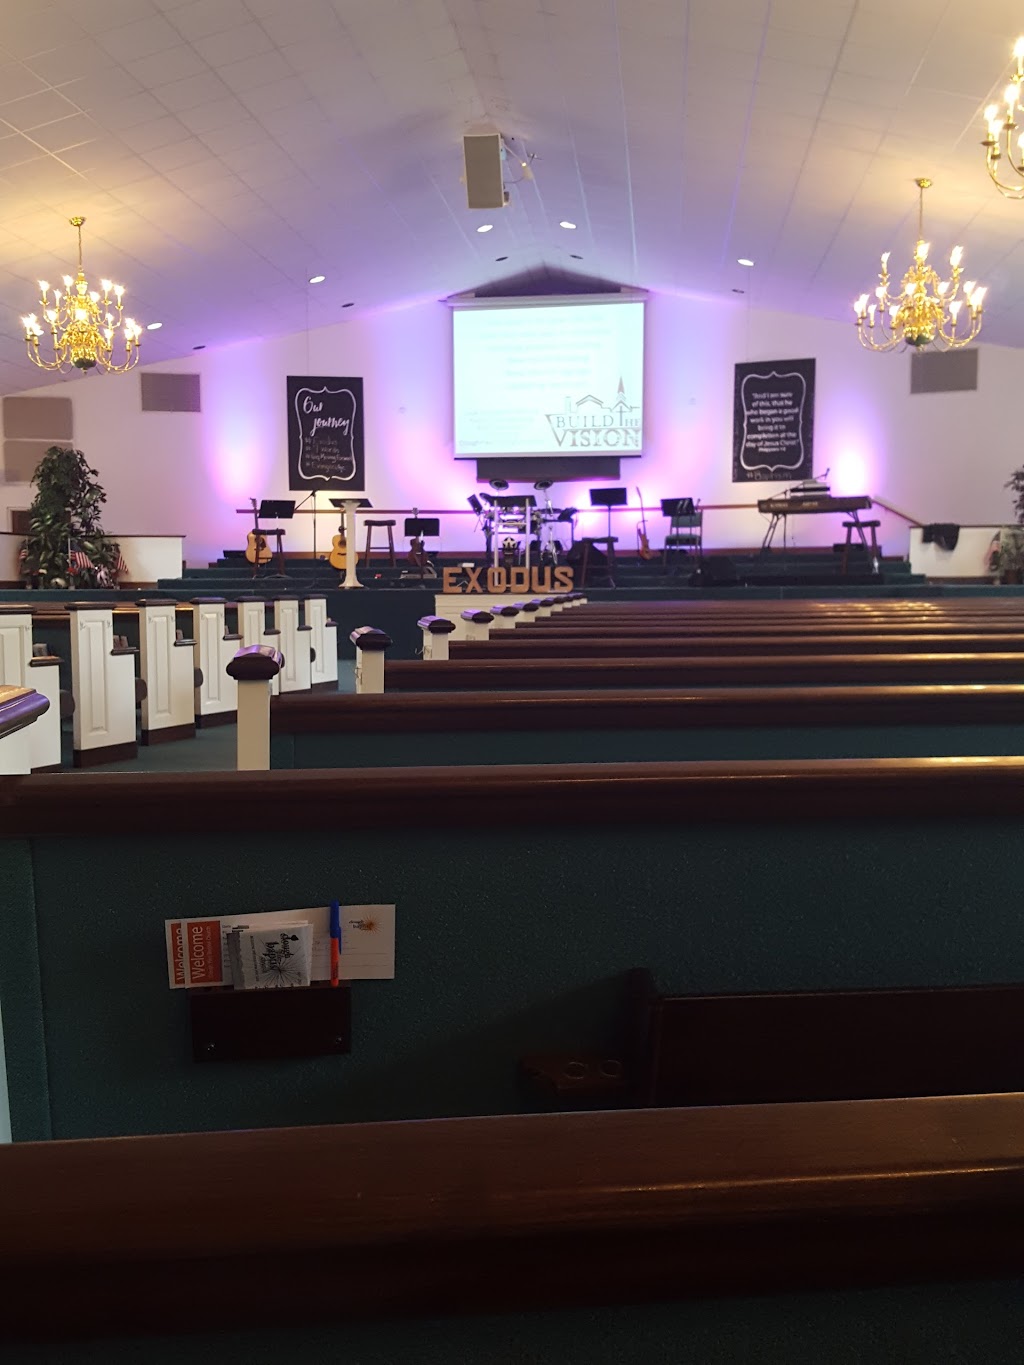 Clough Pike Baptist Church | 1025 Clough Pike, Cincinnati, OH 45245, USA | Phone: (513) 752-3521